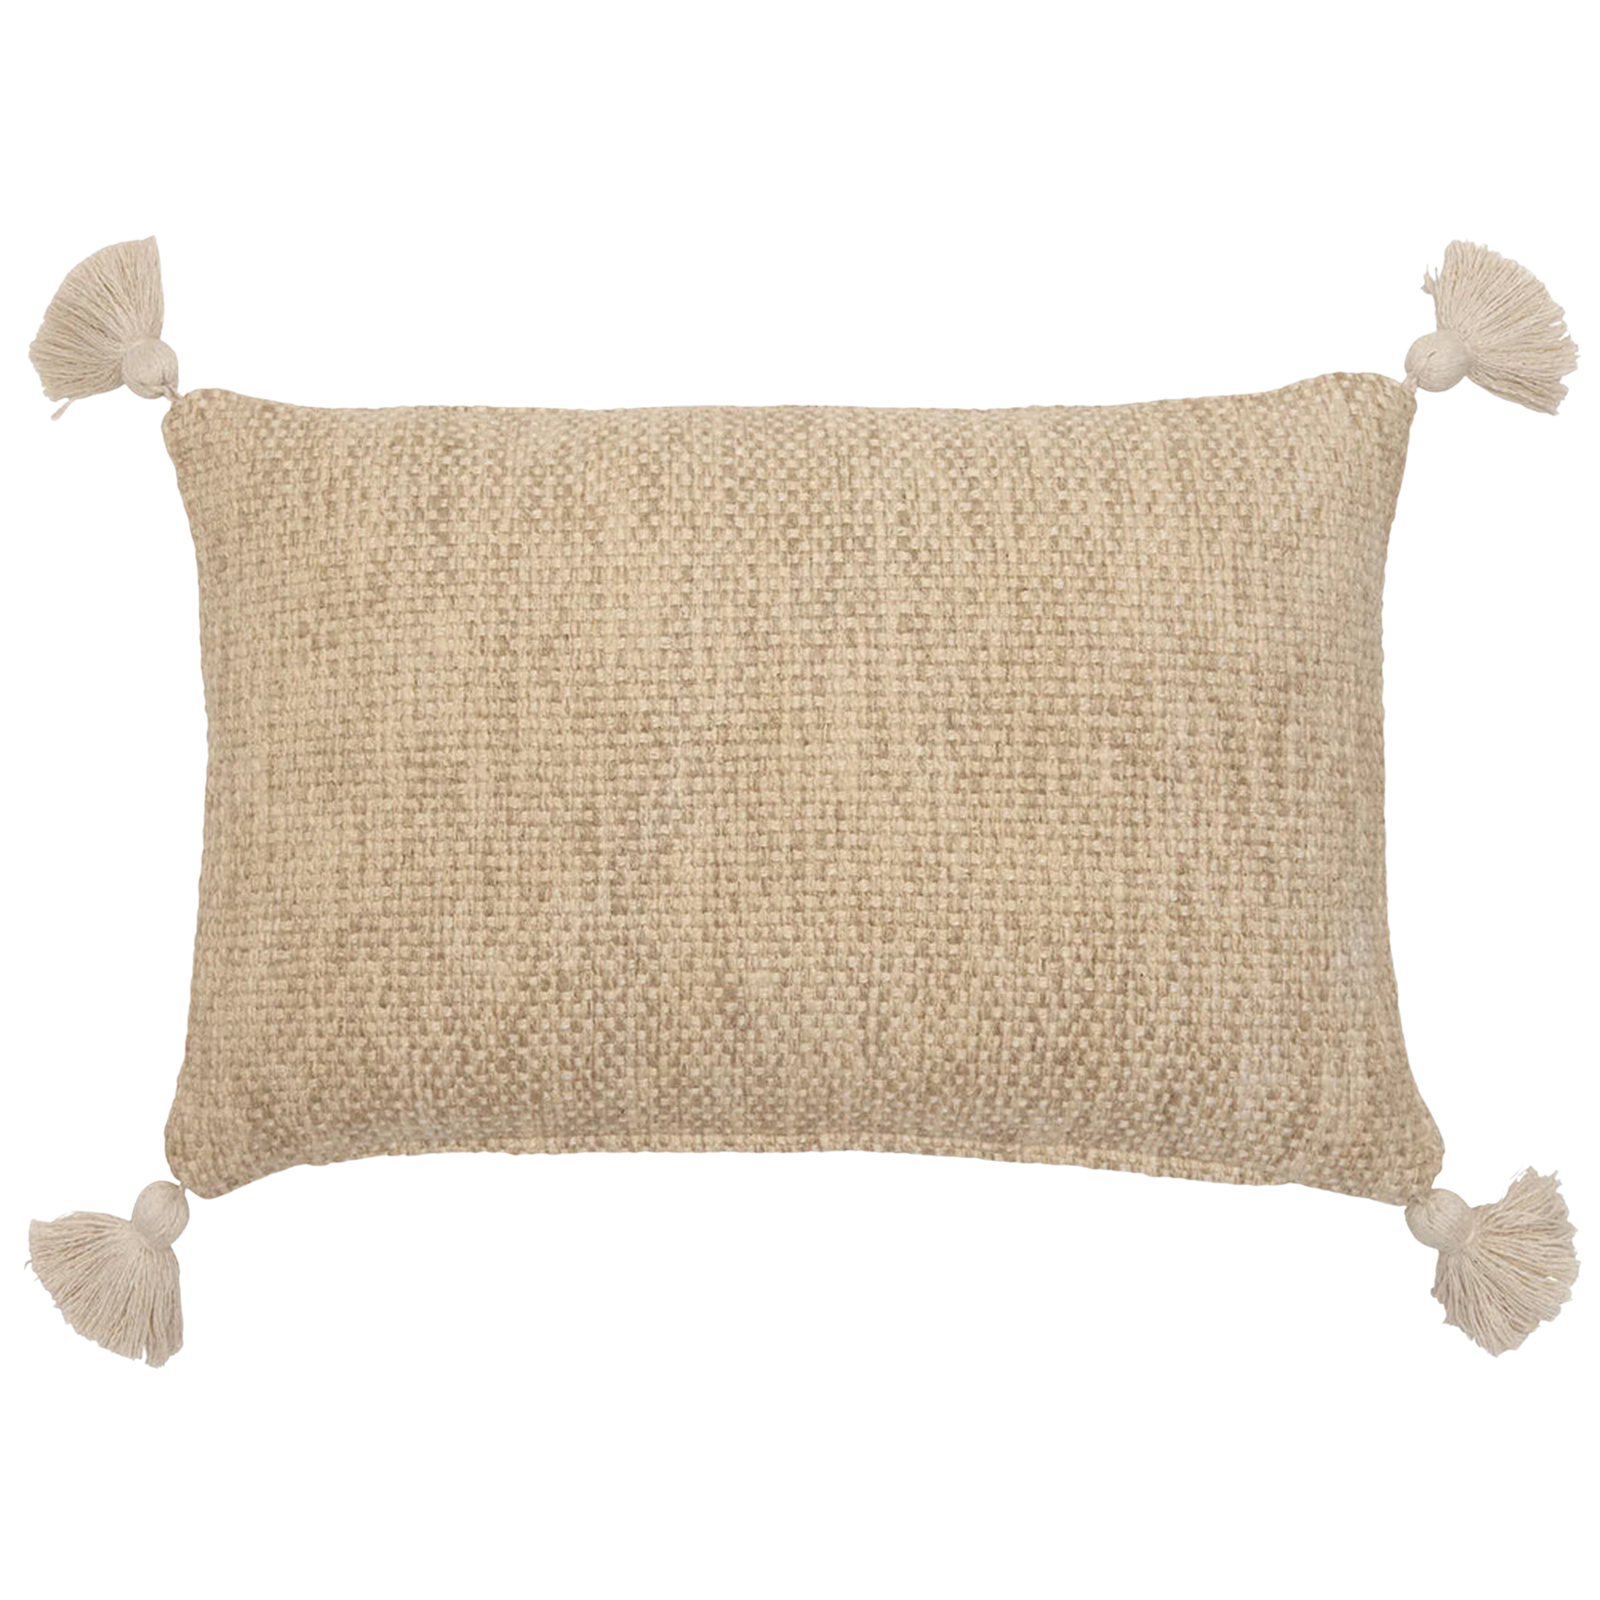 Woven Sand Pillow